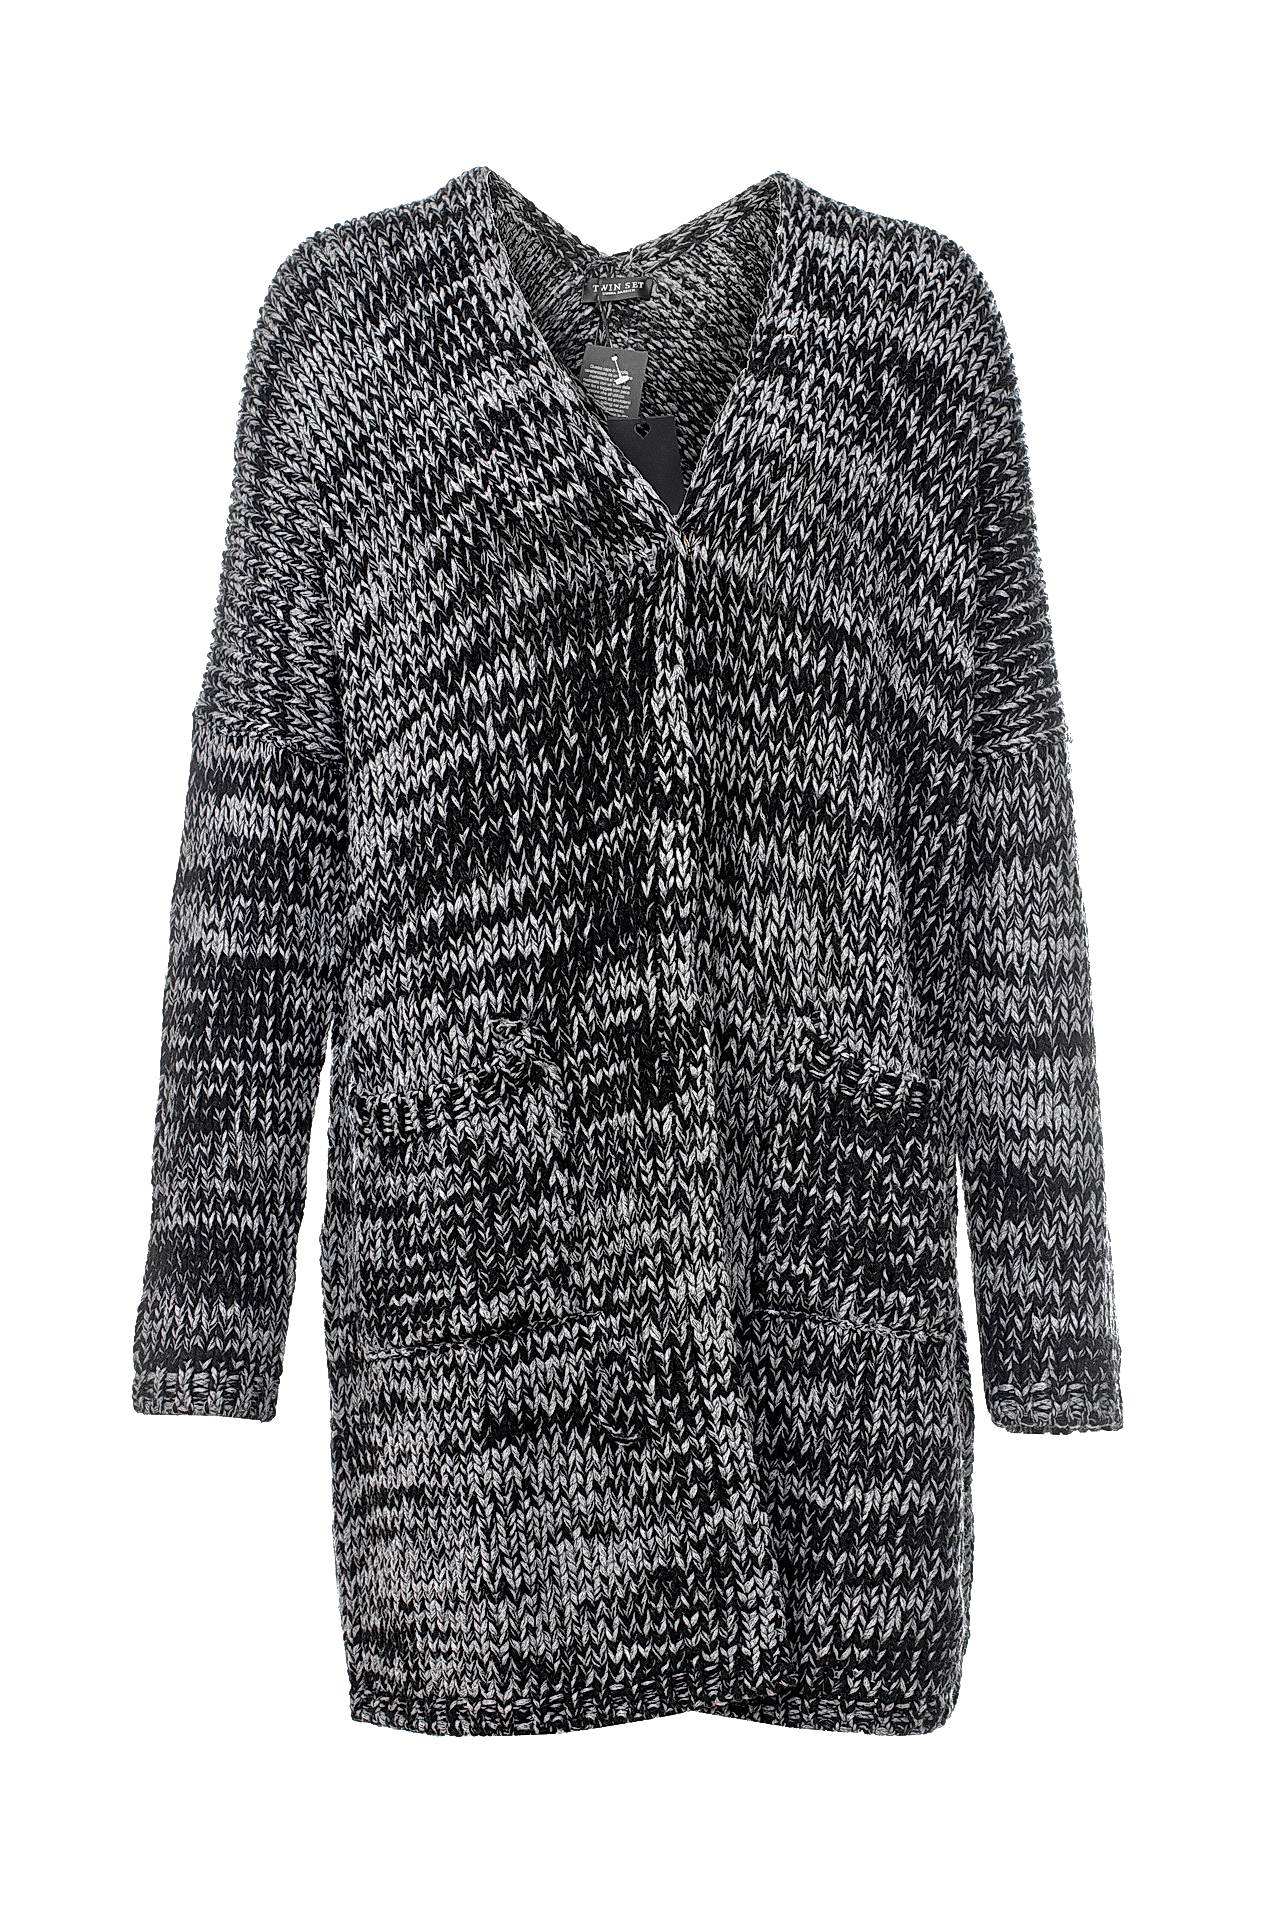 Одежда женская Кардиган TWIN-SET (A6TTA6323/17.1). Купить за 8940 руб.